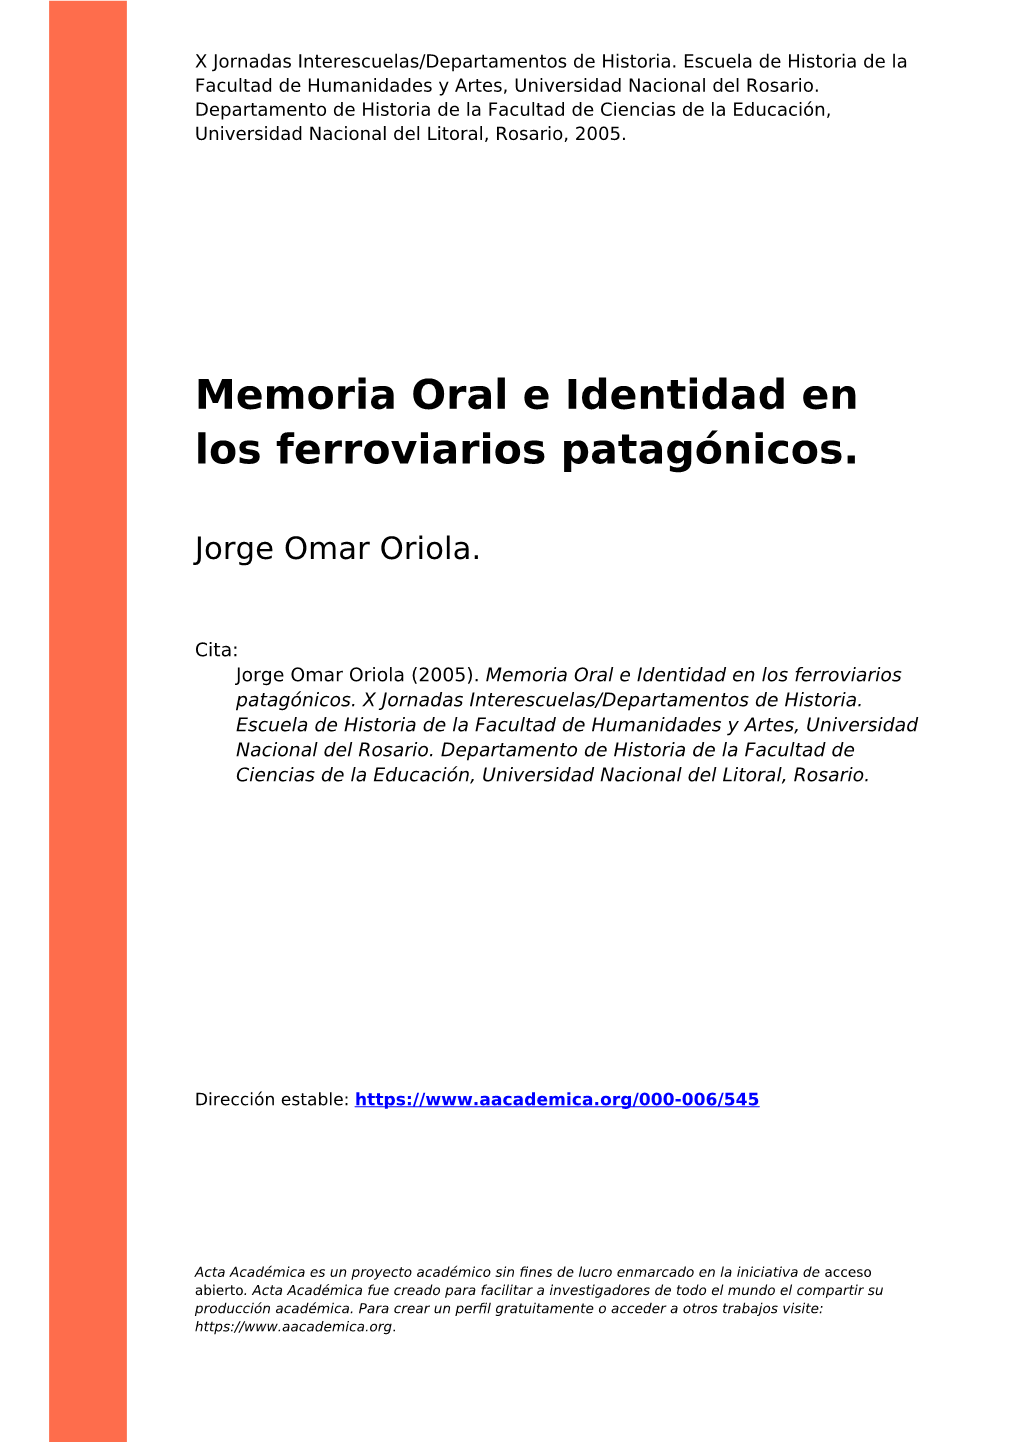 Memoria Oral E Identidad En Los Ferroviarios Patagónicos